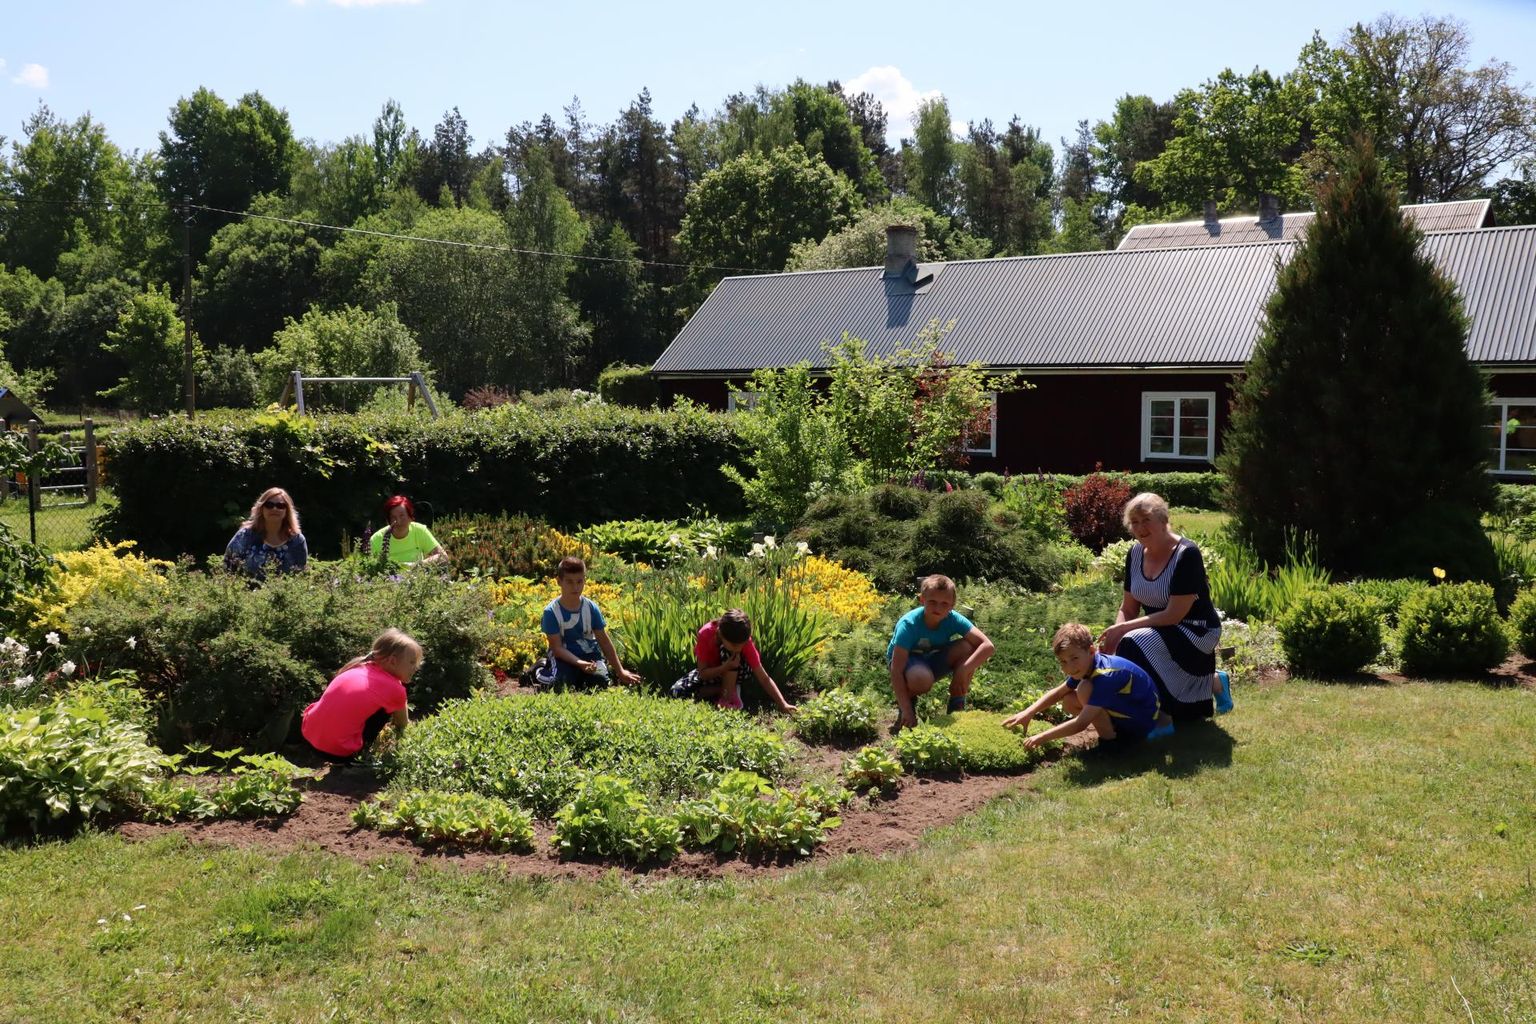 Aasta küla hindamiskomisjon külastab Hargla kanti sel reedel. Hargla kooli aias tegid rohimistöid Hargla elanikud Monika Rogenbaum, Urve Naha, Evi Oherjus ning 1. ja 2. klassi õpilased.